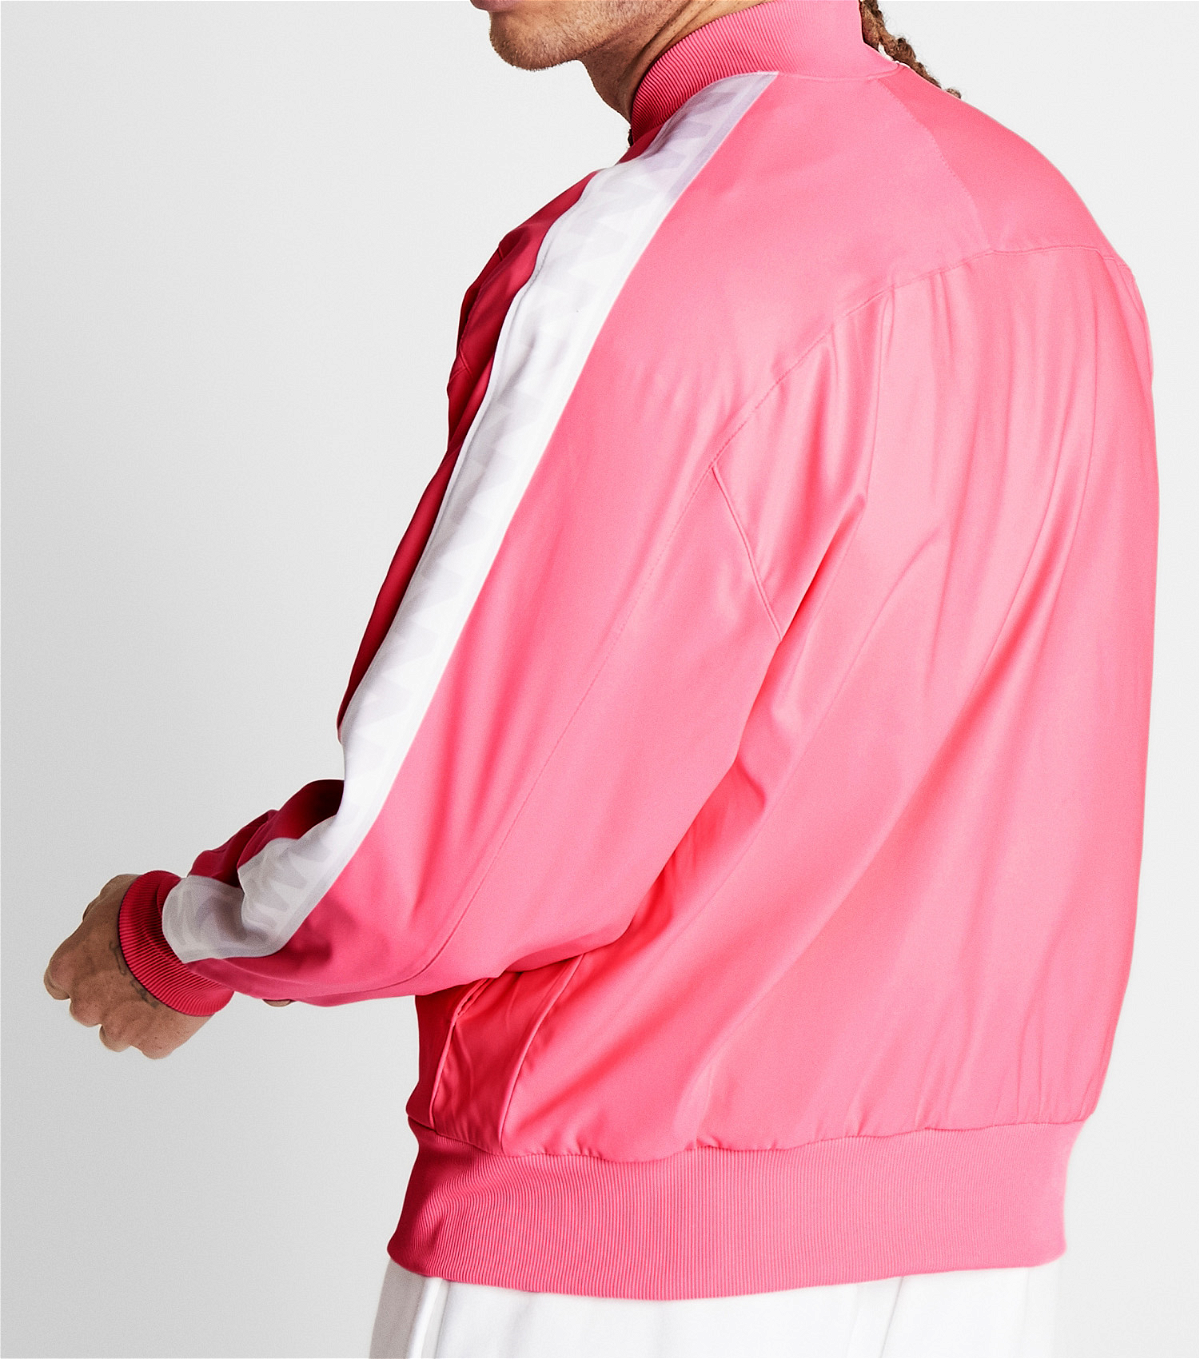 rafael nadal pink jacket